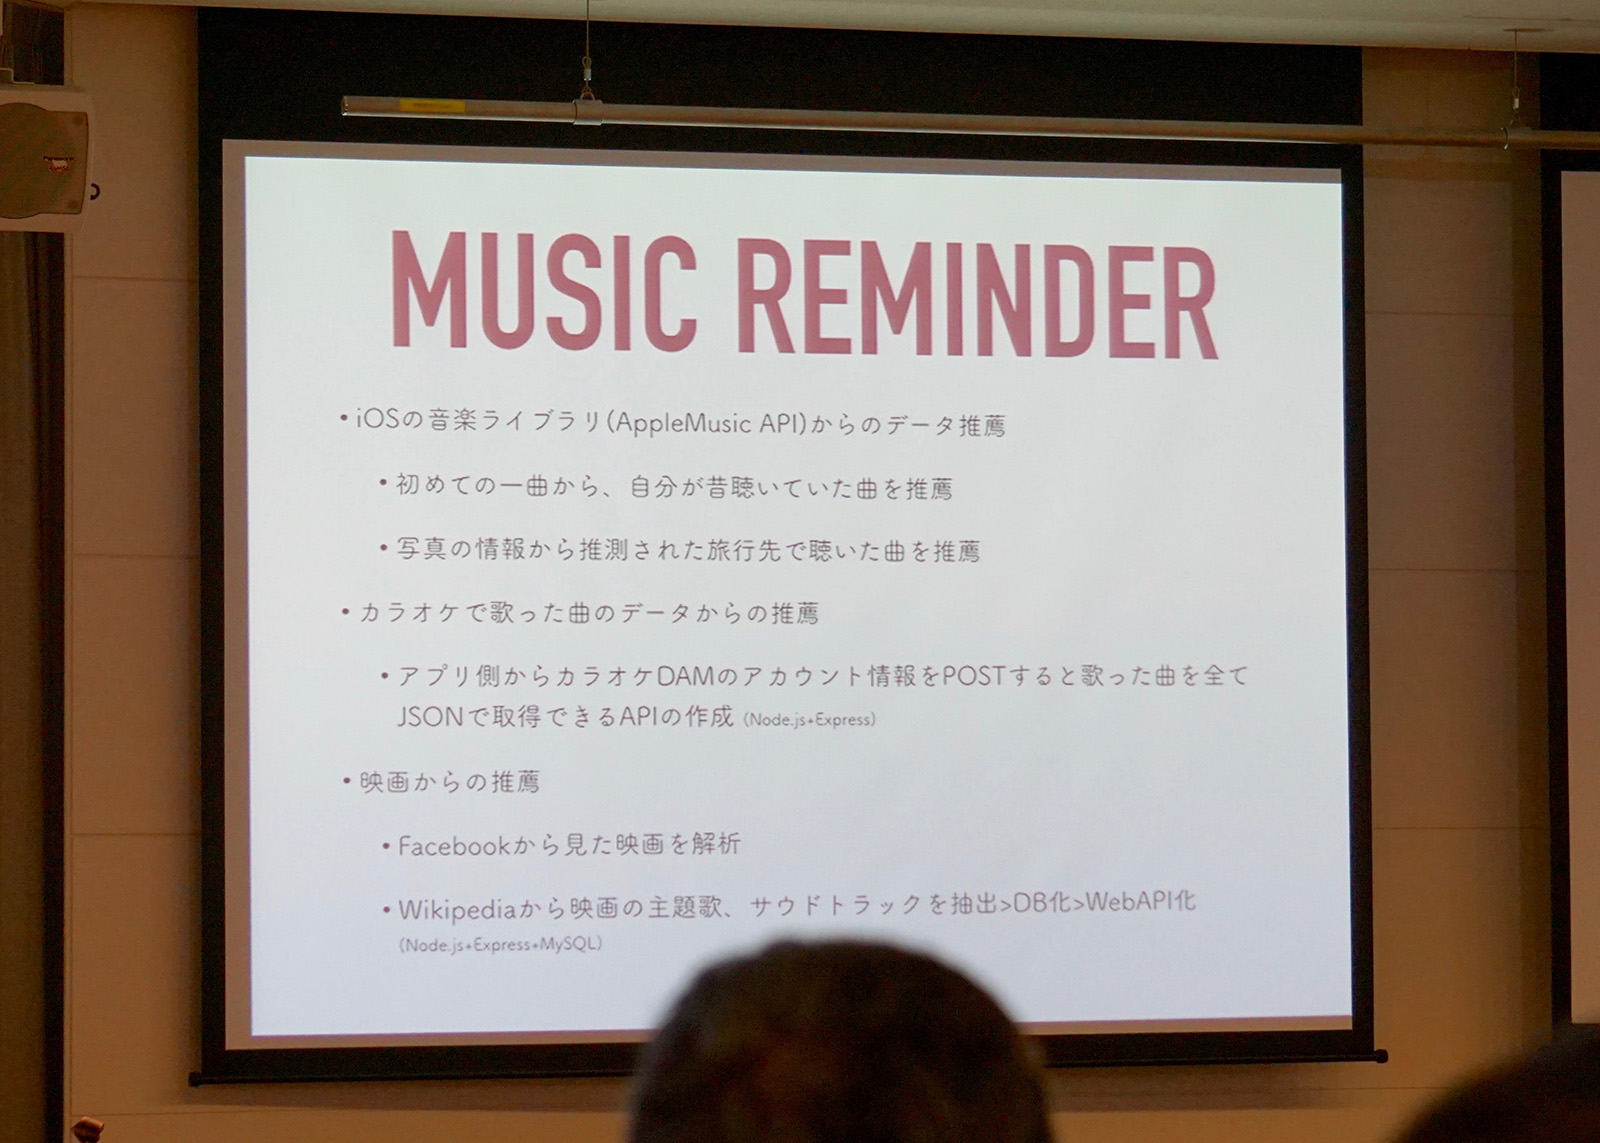 「MUSIC REMINDER」では、Facebookに投稿した写真や映画の情報やカラオケの履歴データを分析し、楽曲を推薦してくれる